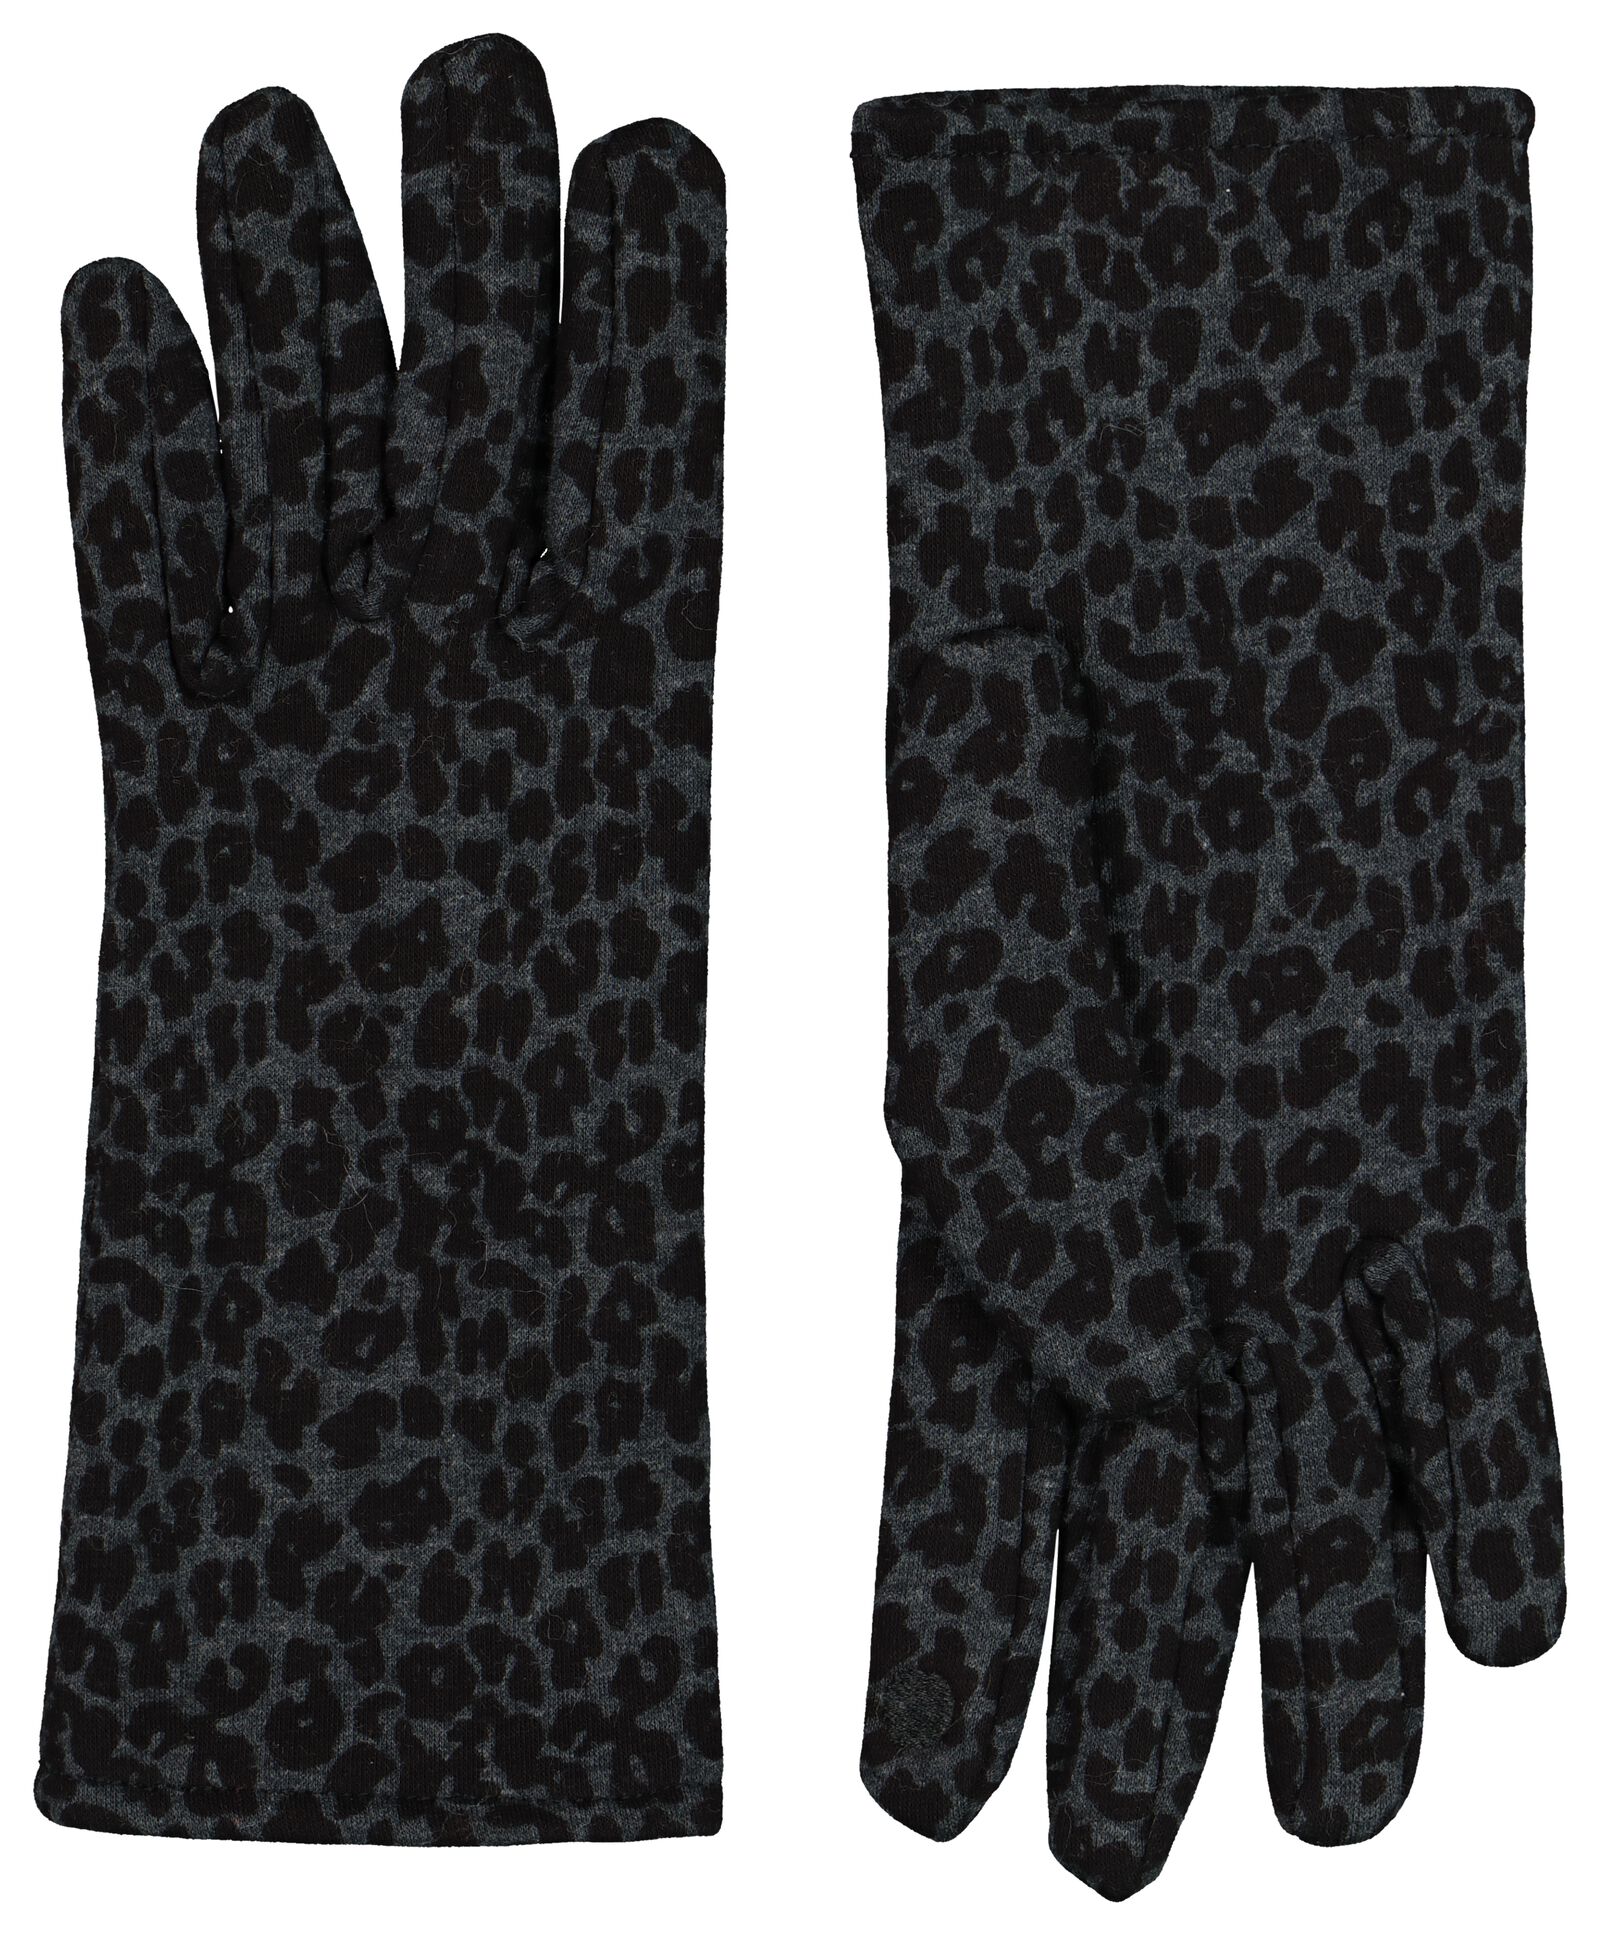 gants femme en cuir pour écran tactile taupe - HEMA